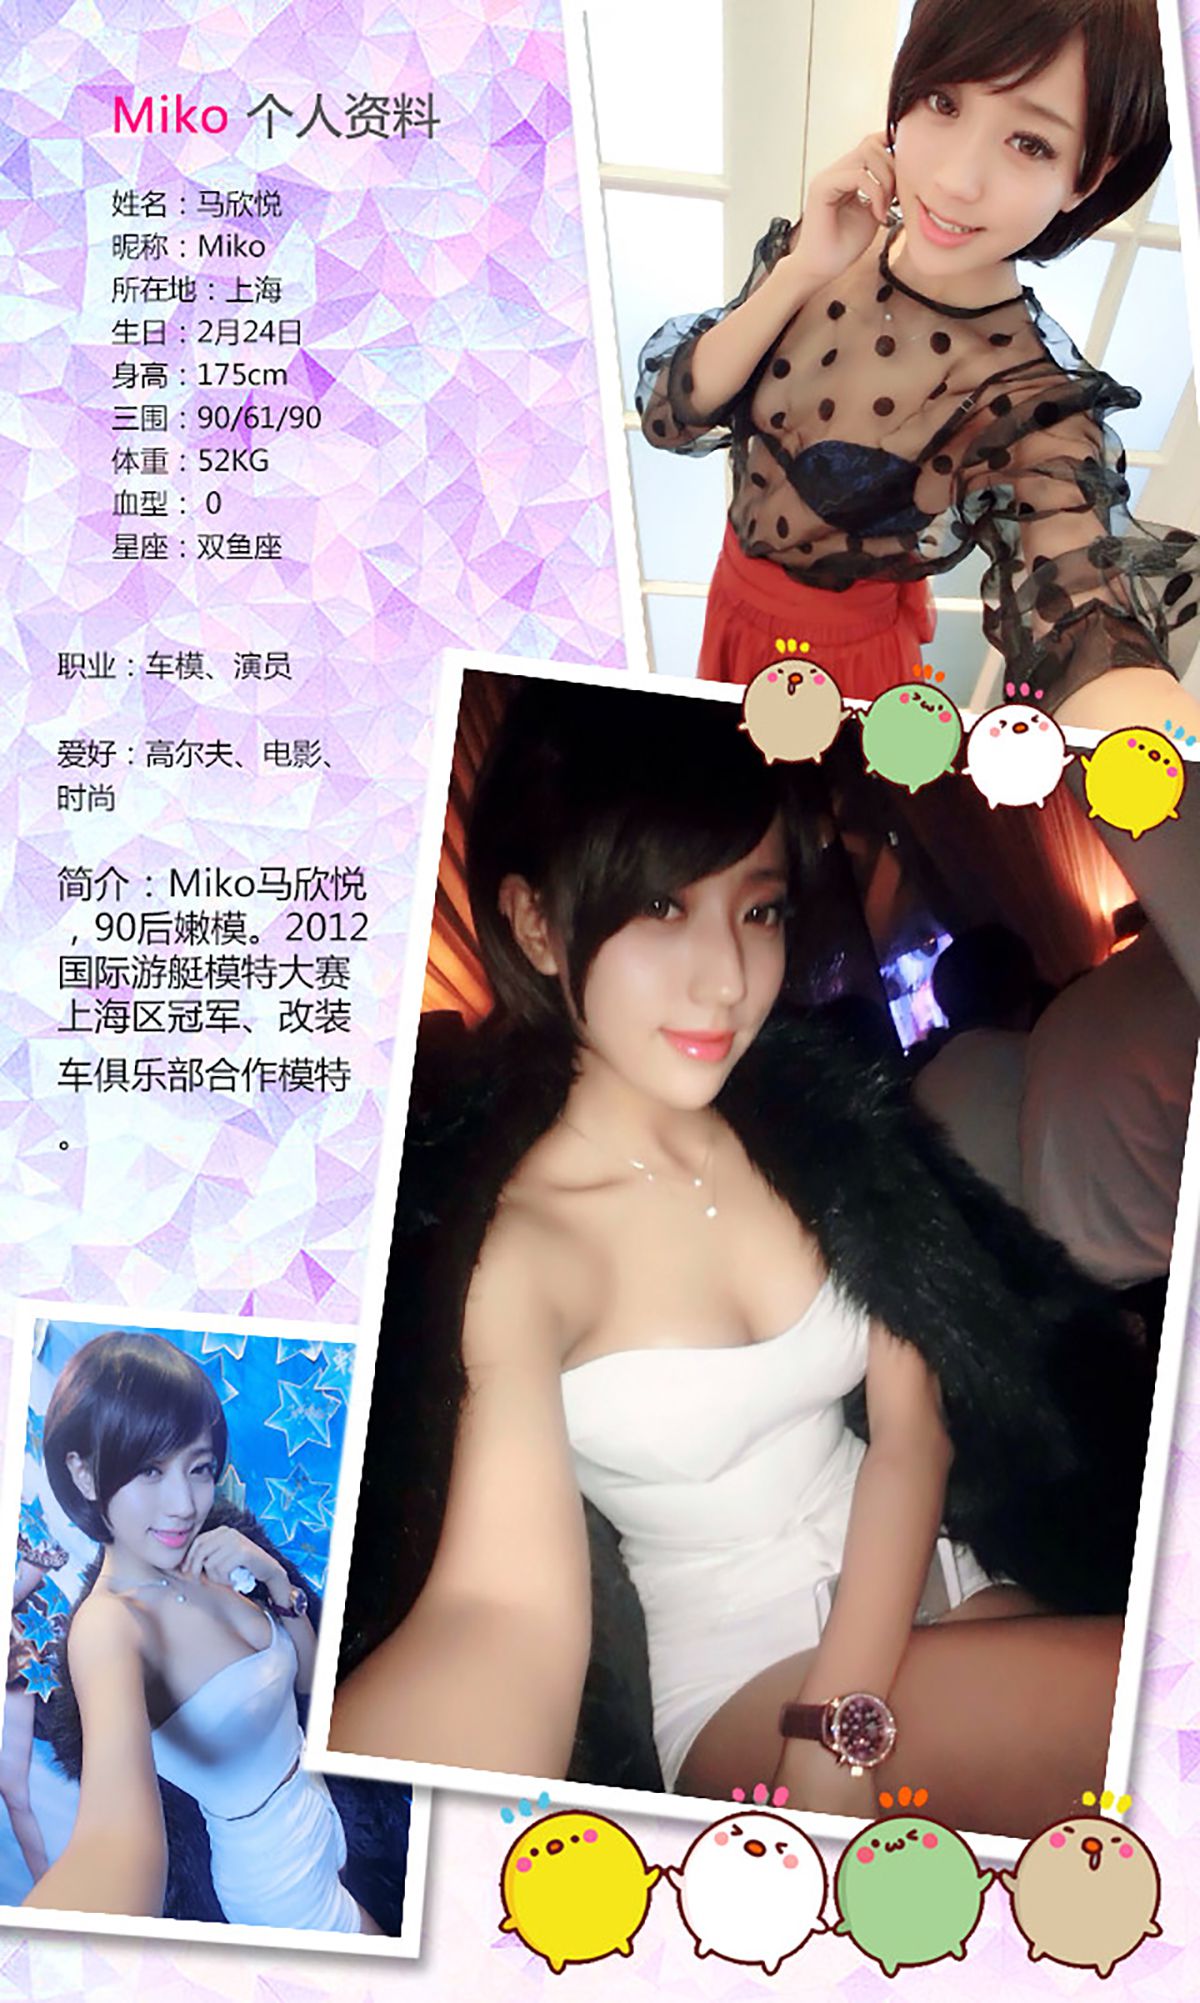 Su Di/Miko Ma Xinyue/Kaneko Hee "Sweet Car Beauty" [Love Ugirls] No.252 Page 28 No.3191a0